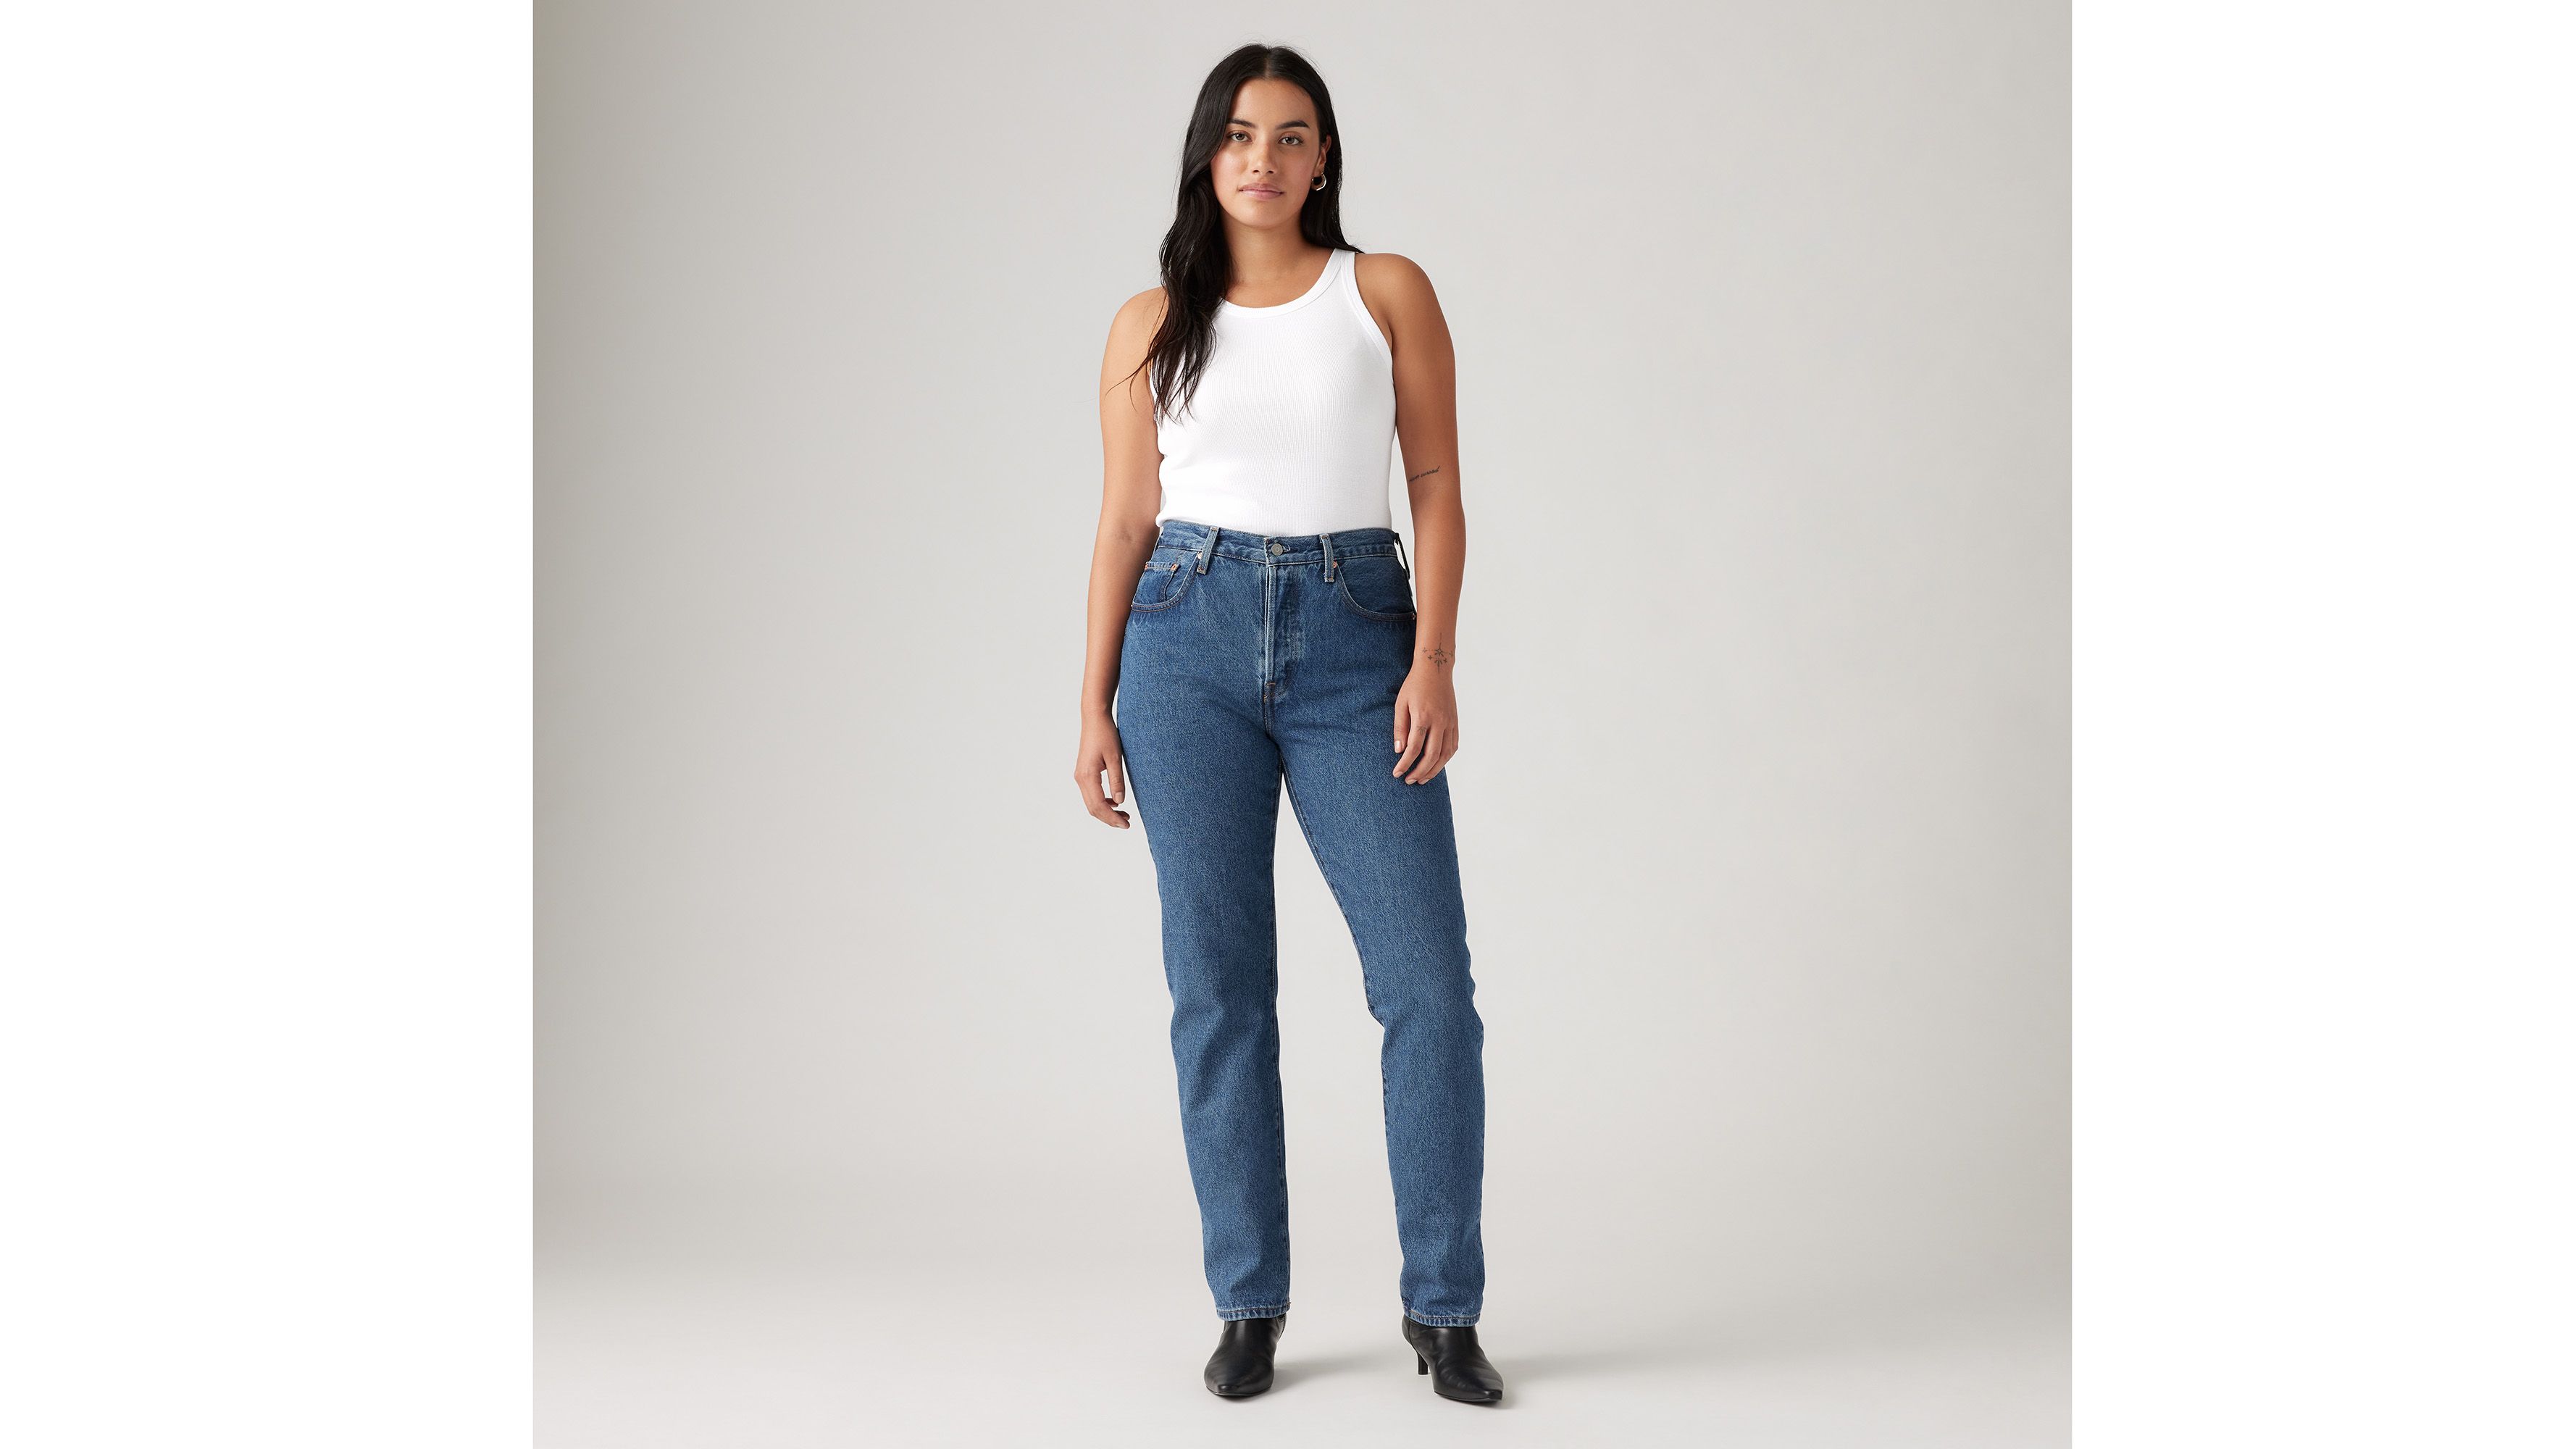 Denim & Jeans Clothing Stores  Levi's® Outlet & Partner Store Finder